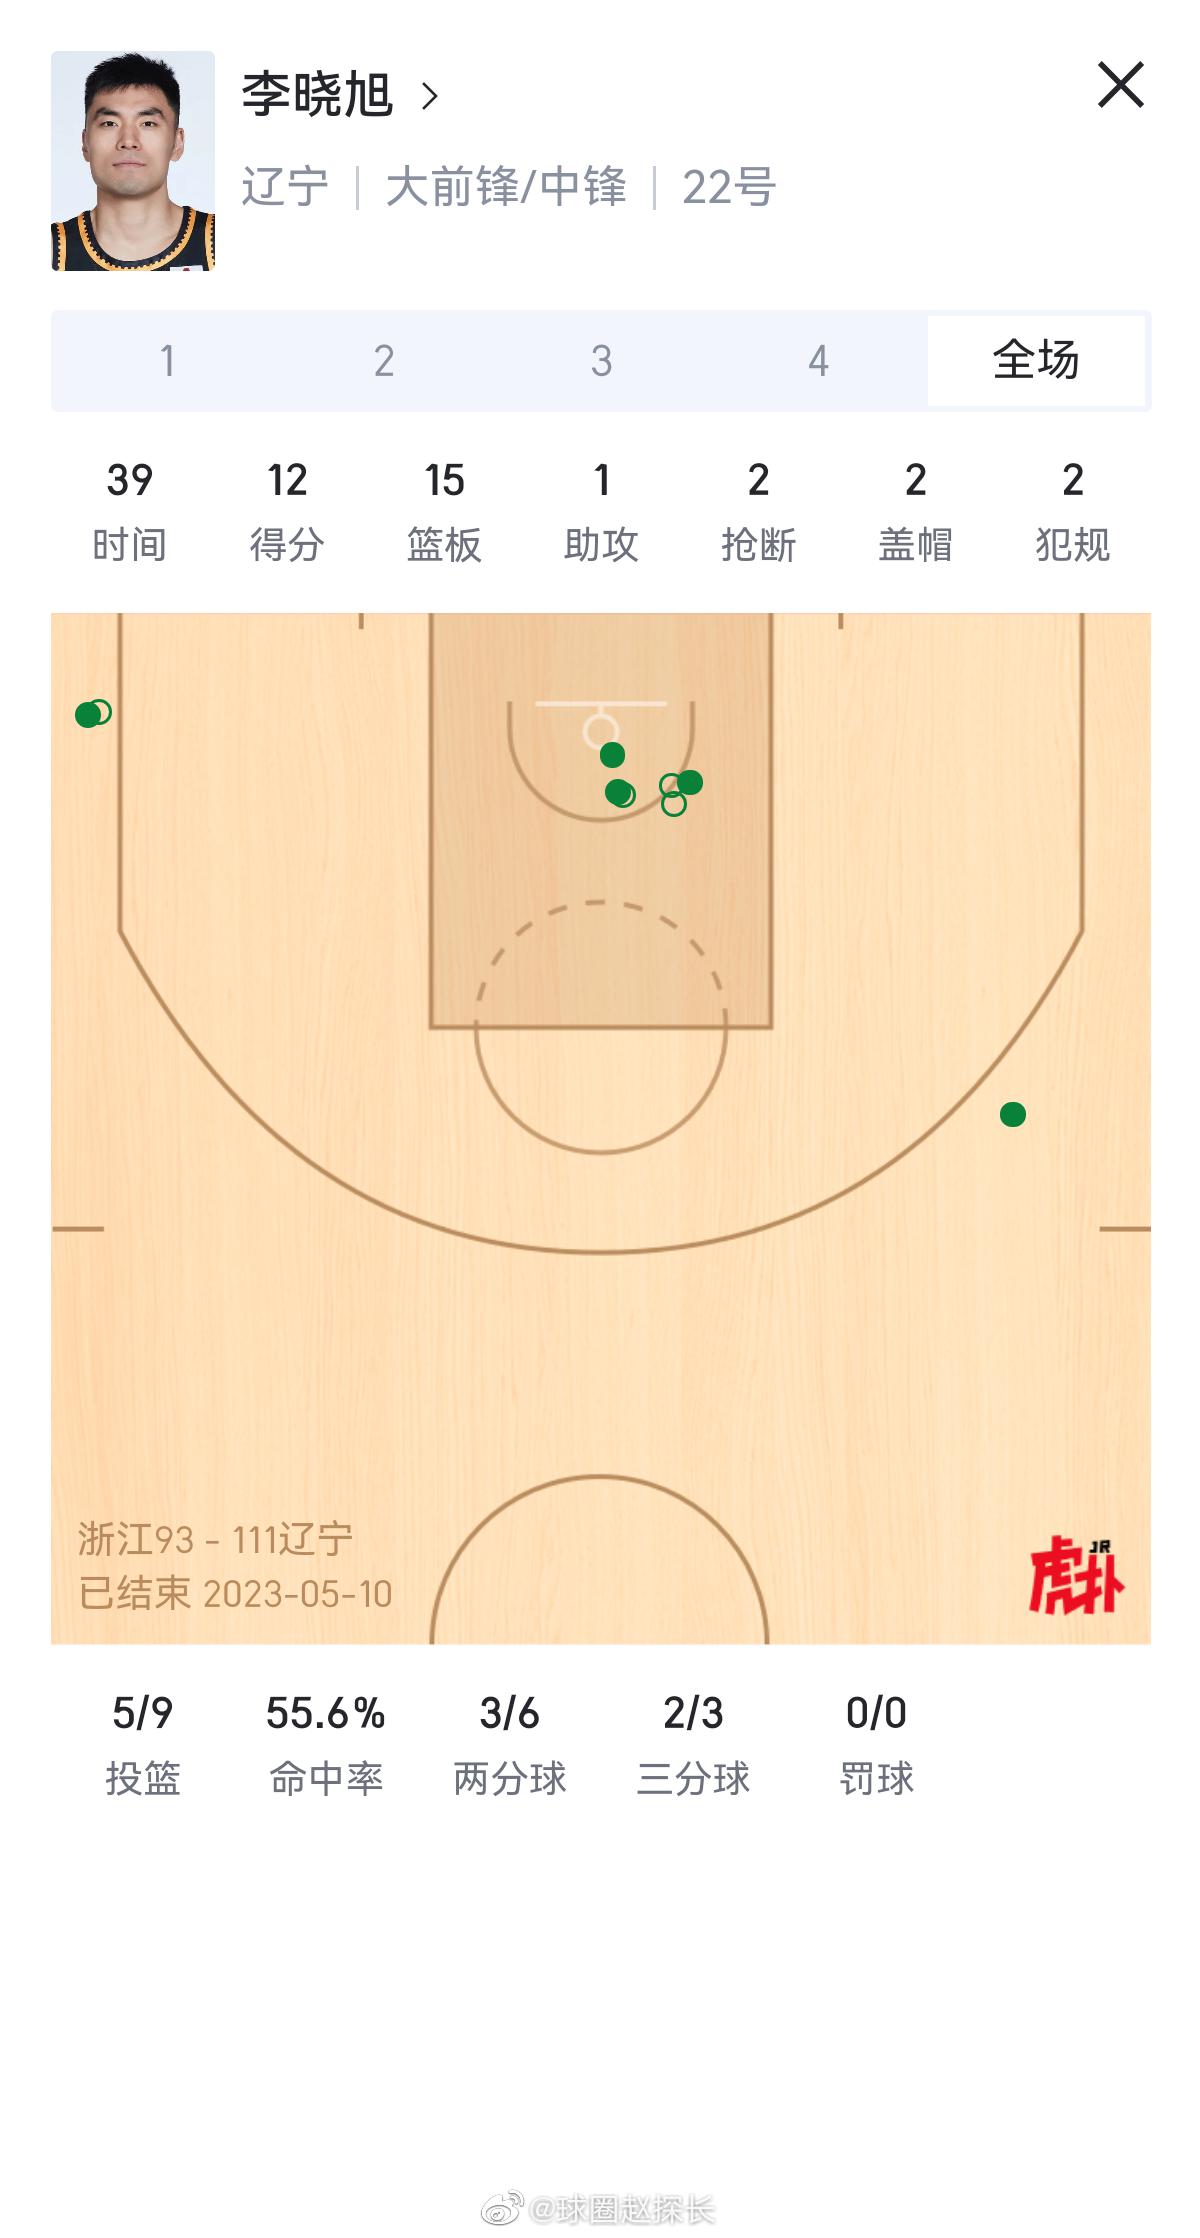 33岁的“老头”李晓旭今天抢到了15个篮板球，浙江首发全部加起来也不到15个。刨(1)